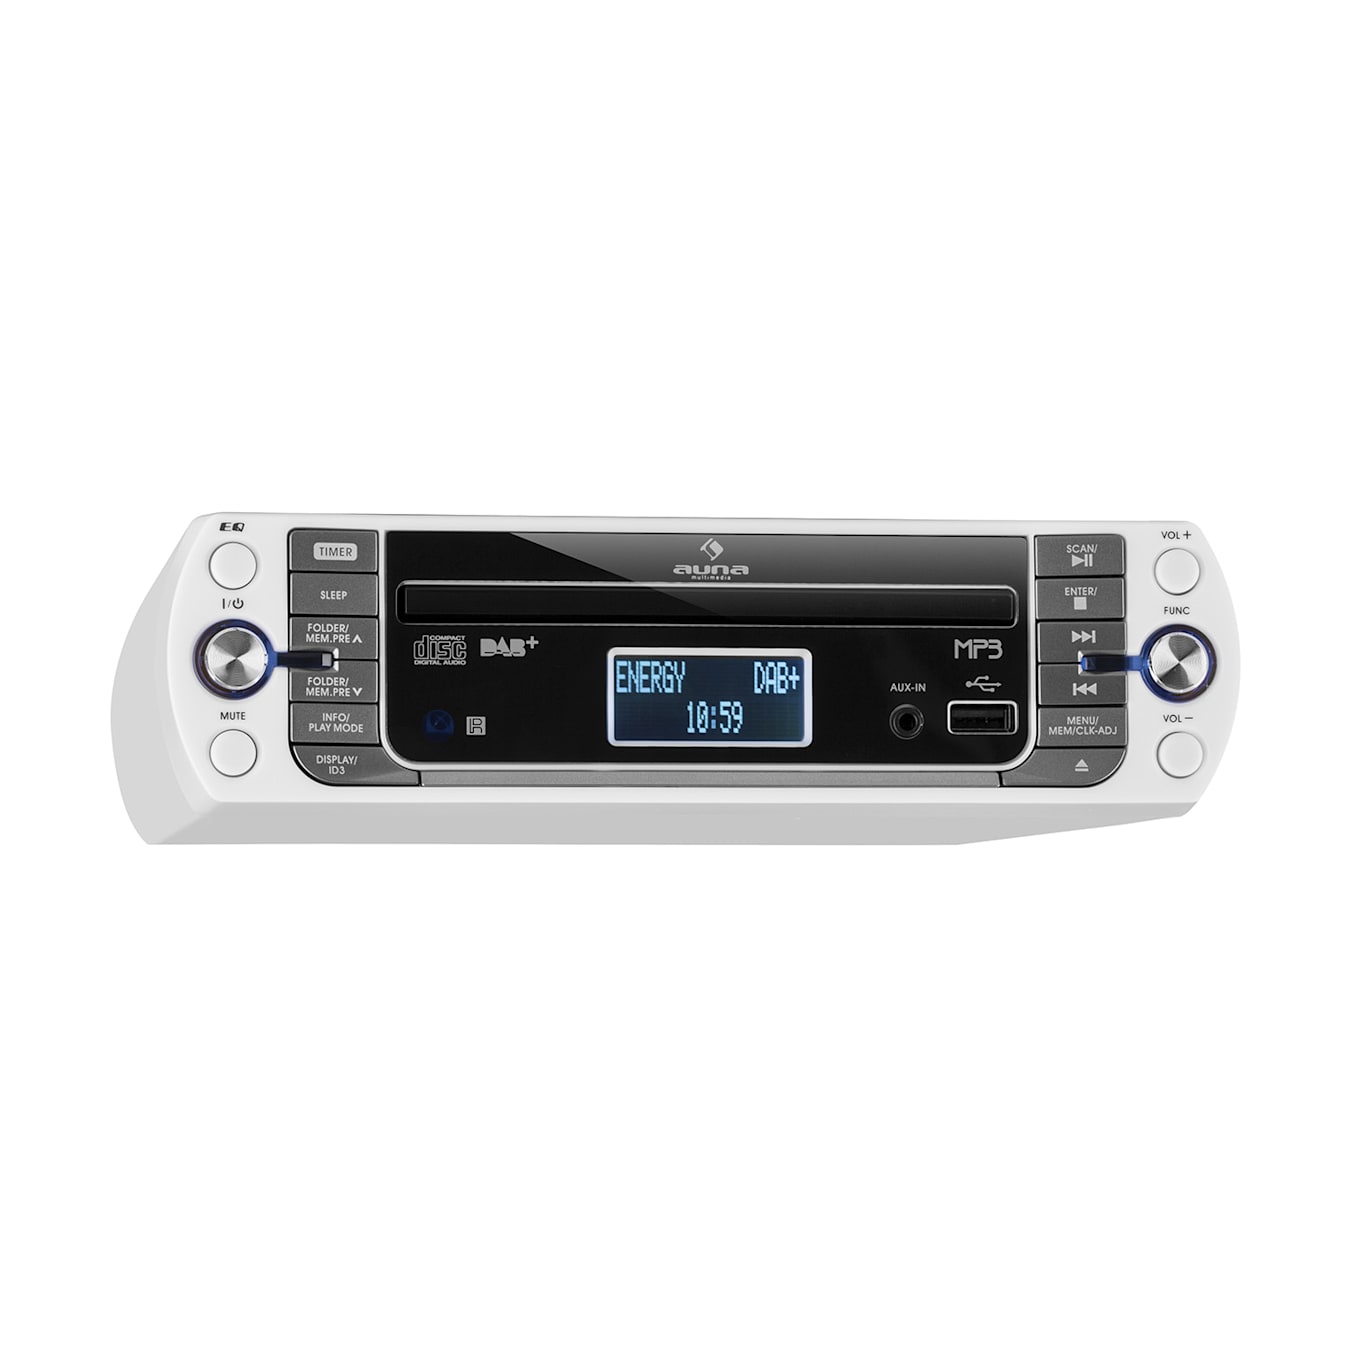 Radio cd cassette portable numerique pll fm, lecteur cd-mp3, usb